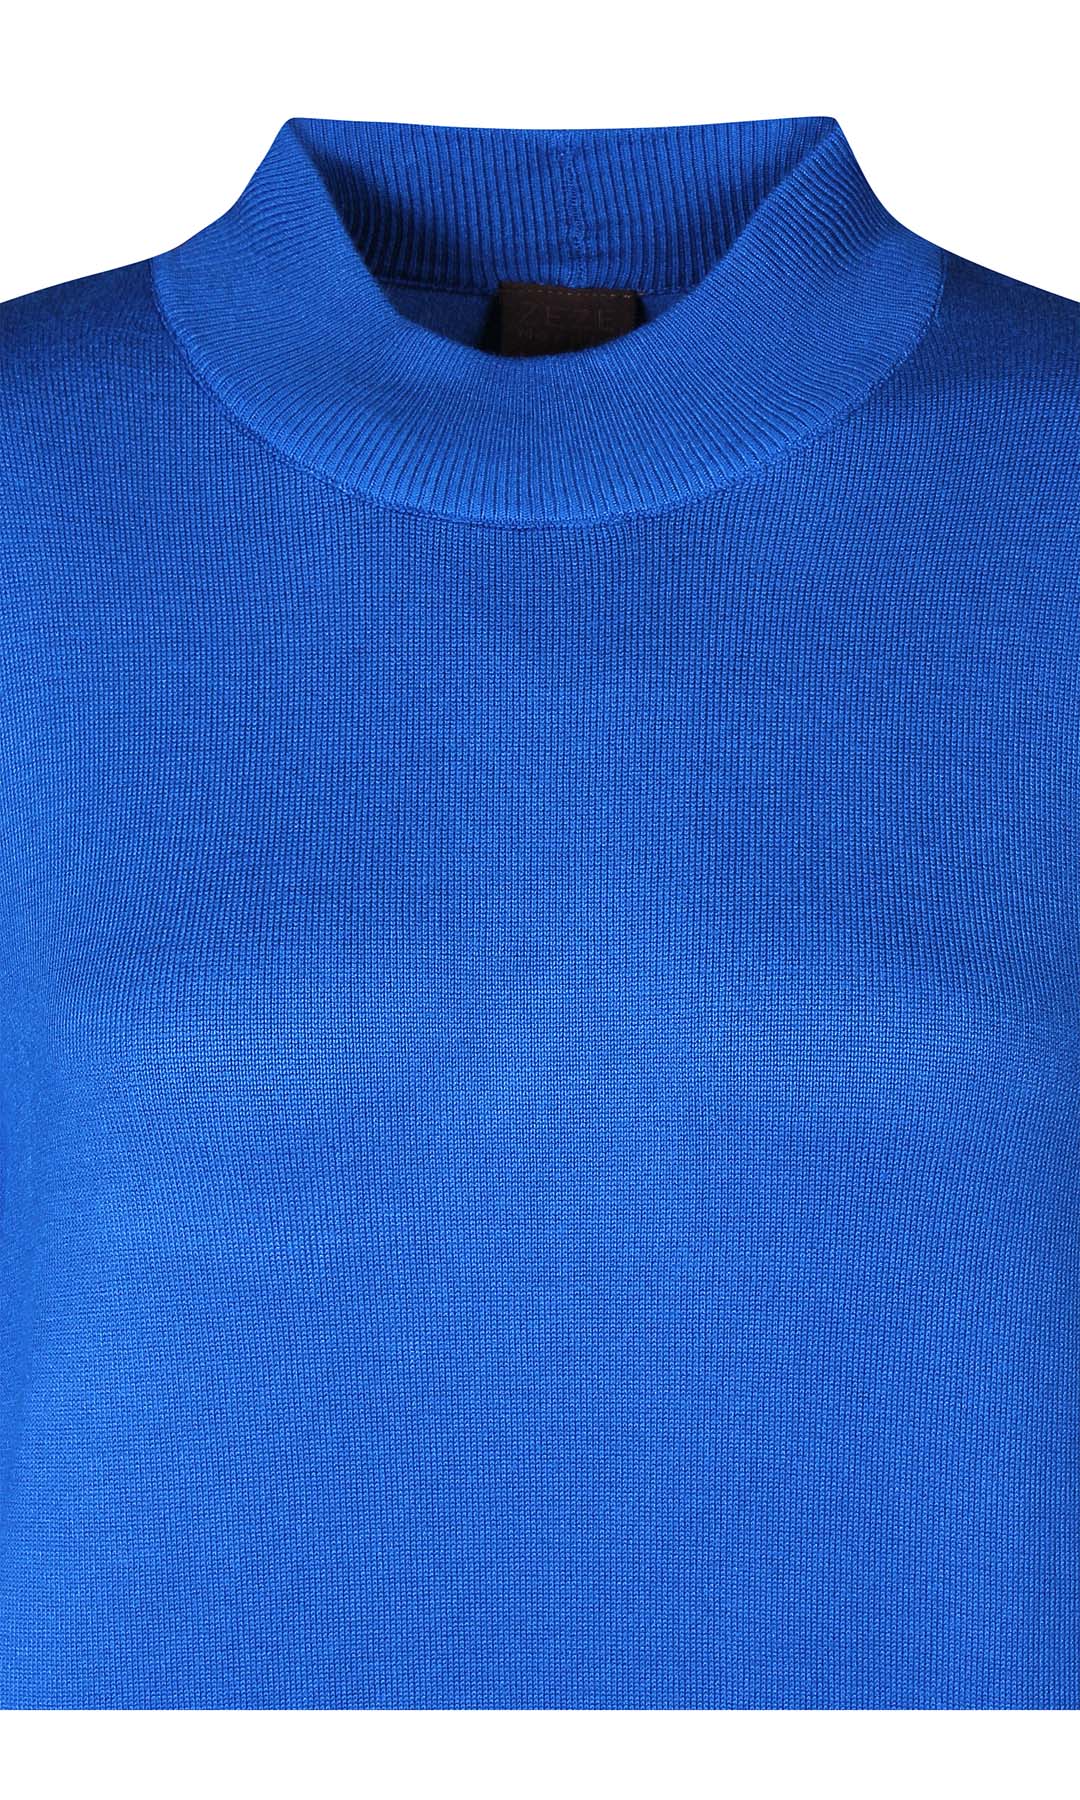 Norma 083 - Trøje - Blå